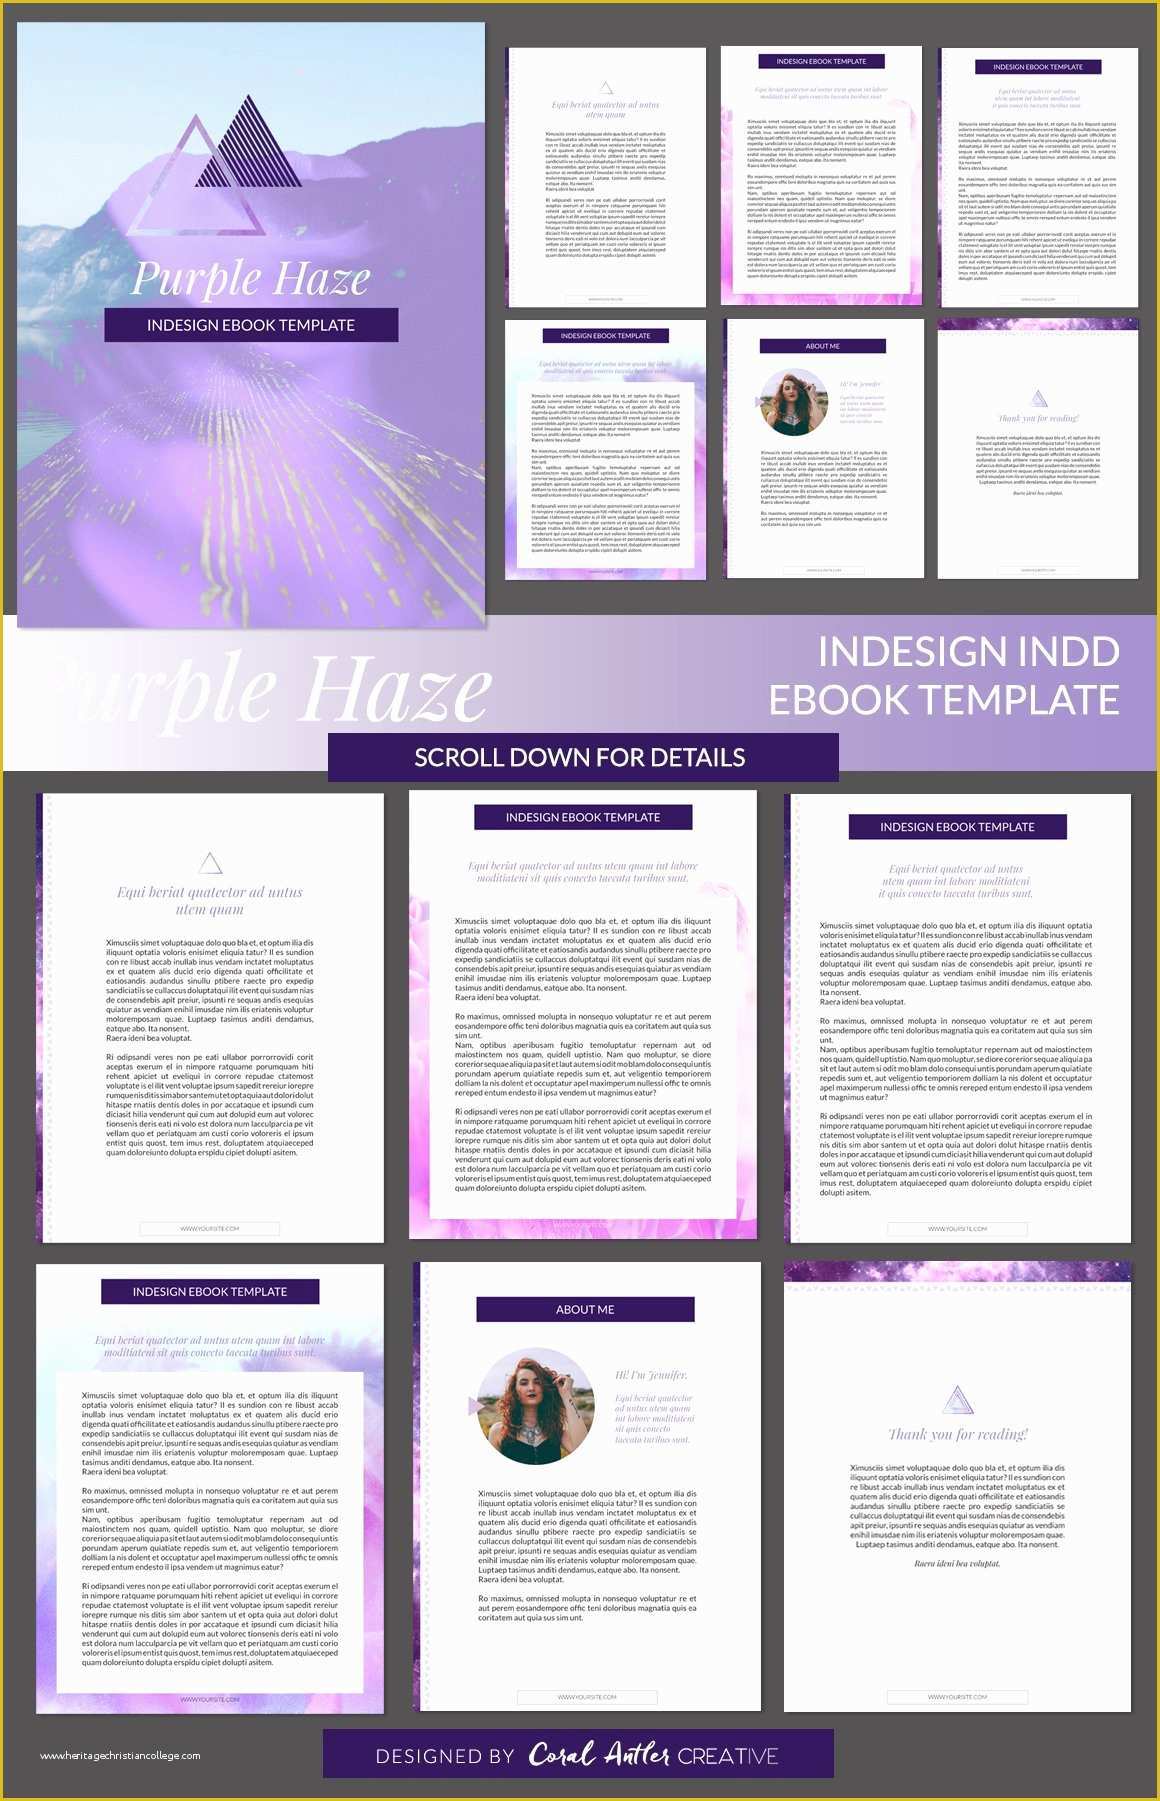 Free Ebook Templates Of Purple Haze Indesign Ebook Template Presentation